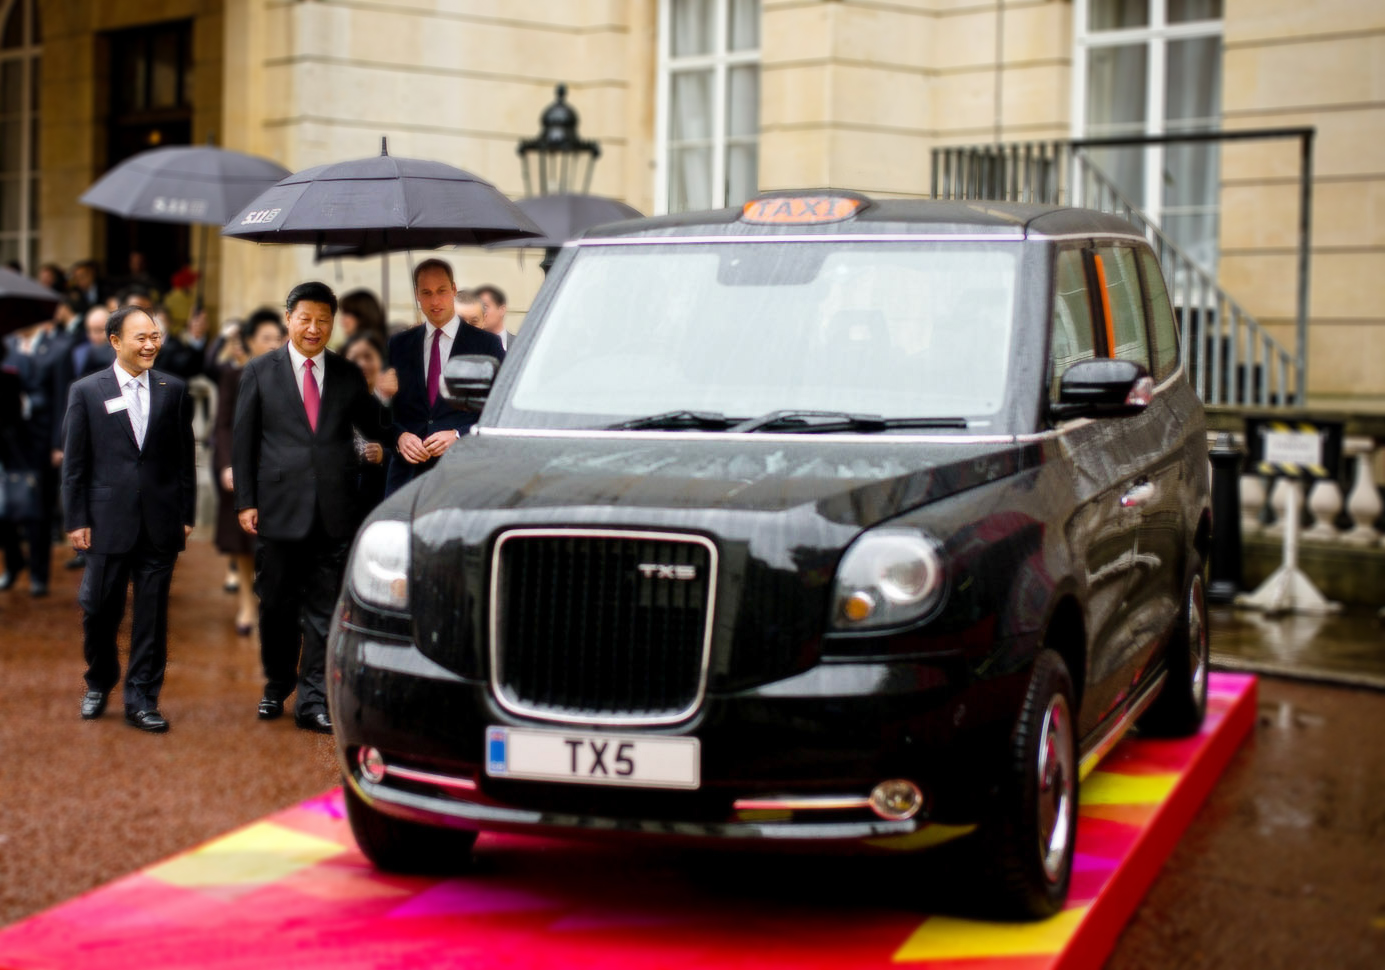 习近平主席访问英国期间参观全新一代具有零排放能力的伦敦出租车TX5